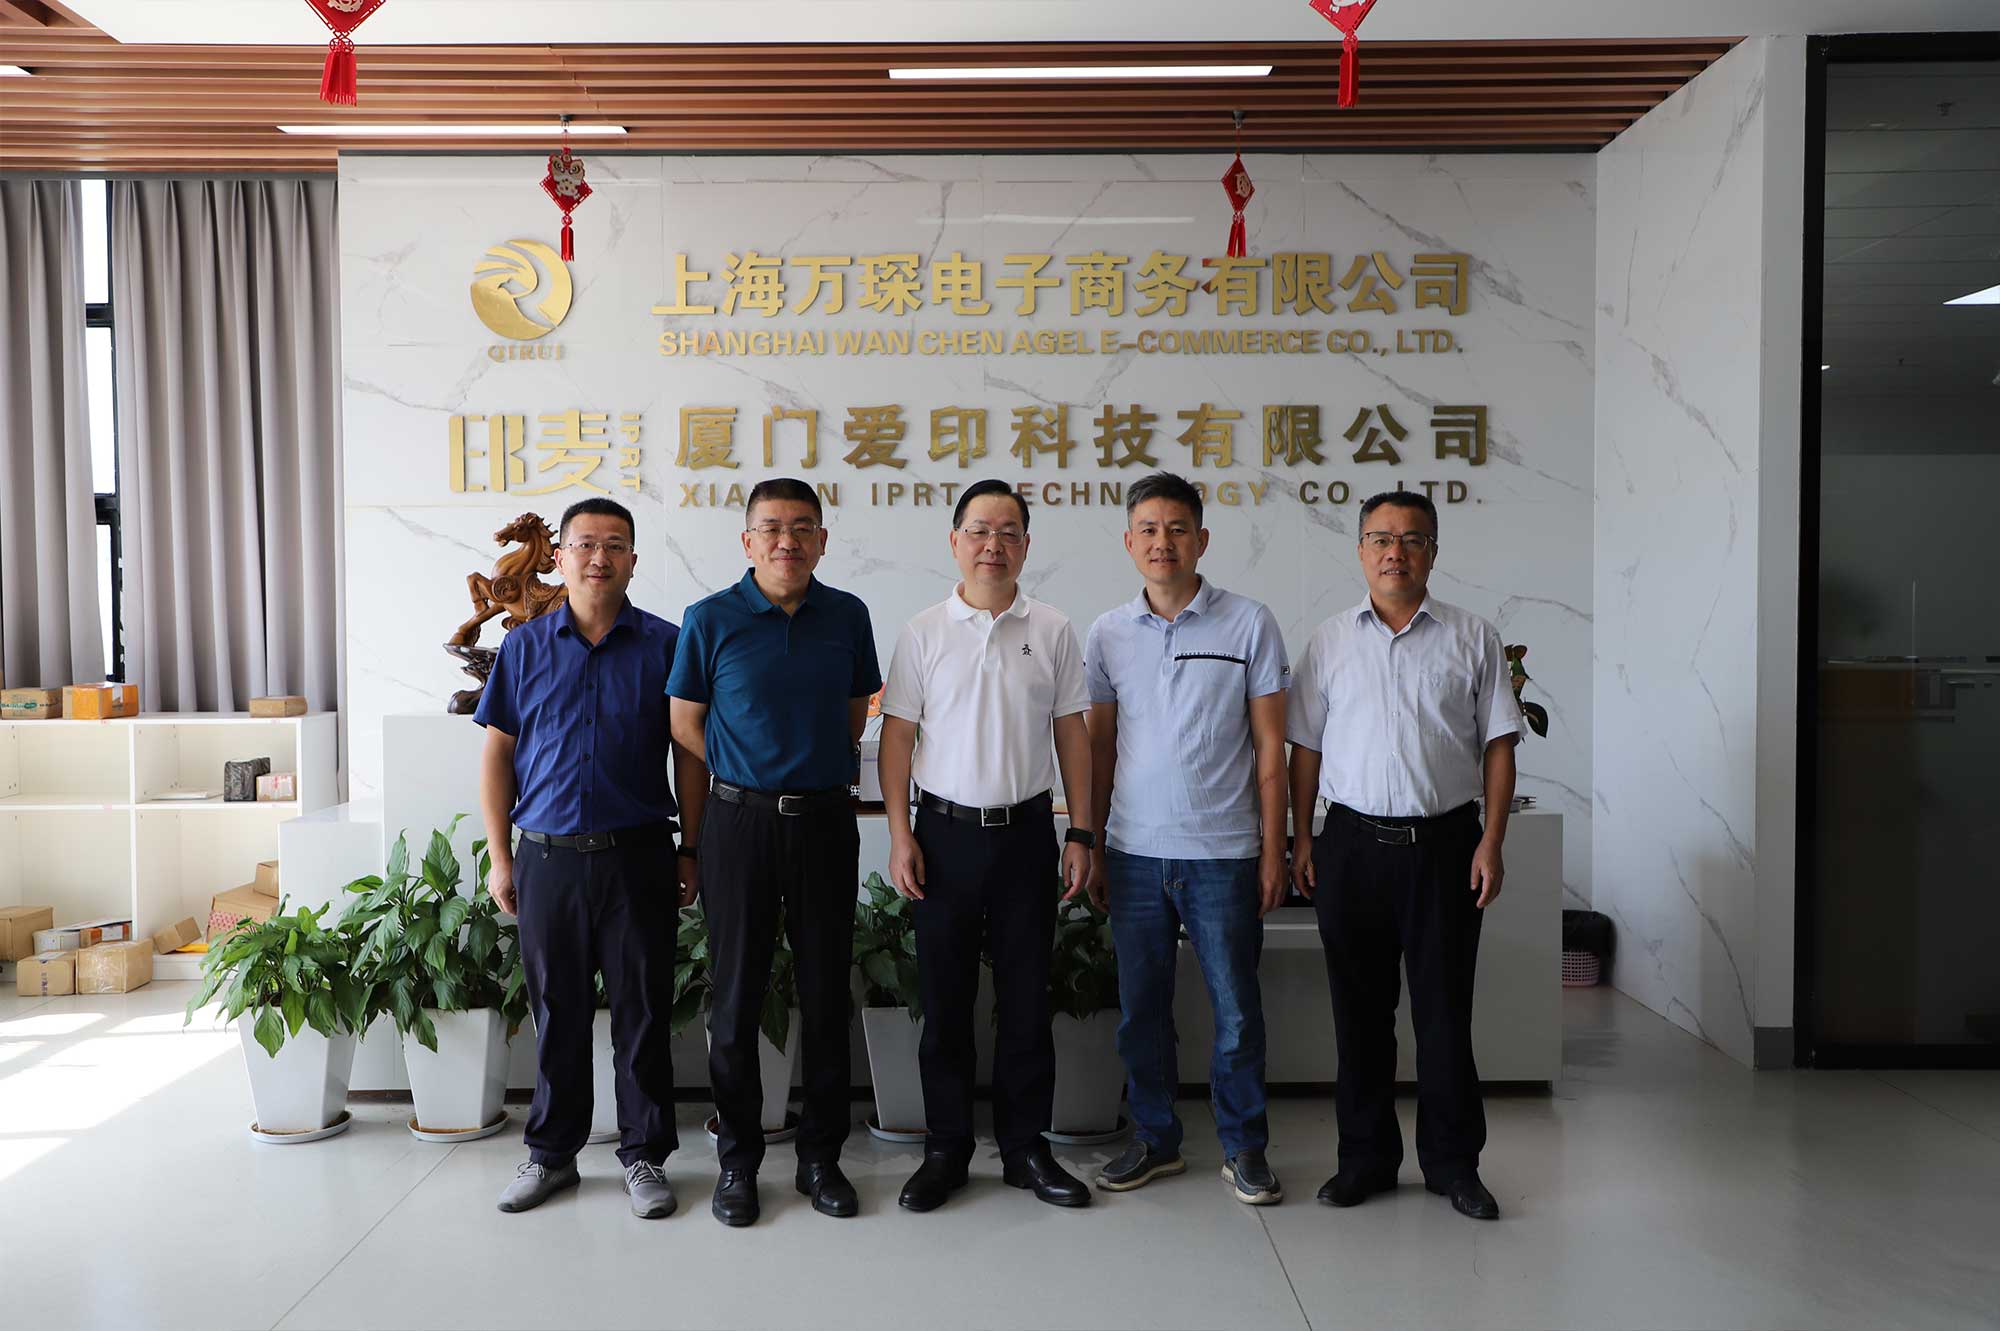 Phó Chủ tịch CPPCC Hạ Môn Li Qinhui và những người khác đã đến thăm Công nghệ IPRT để điều tra và hướng dẫn